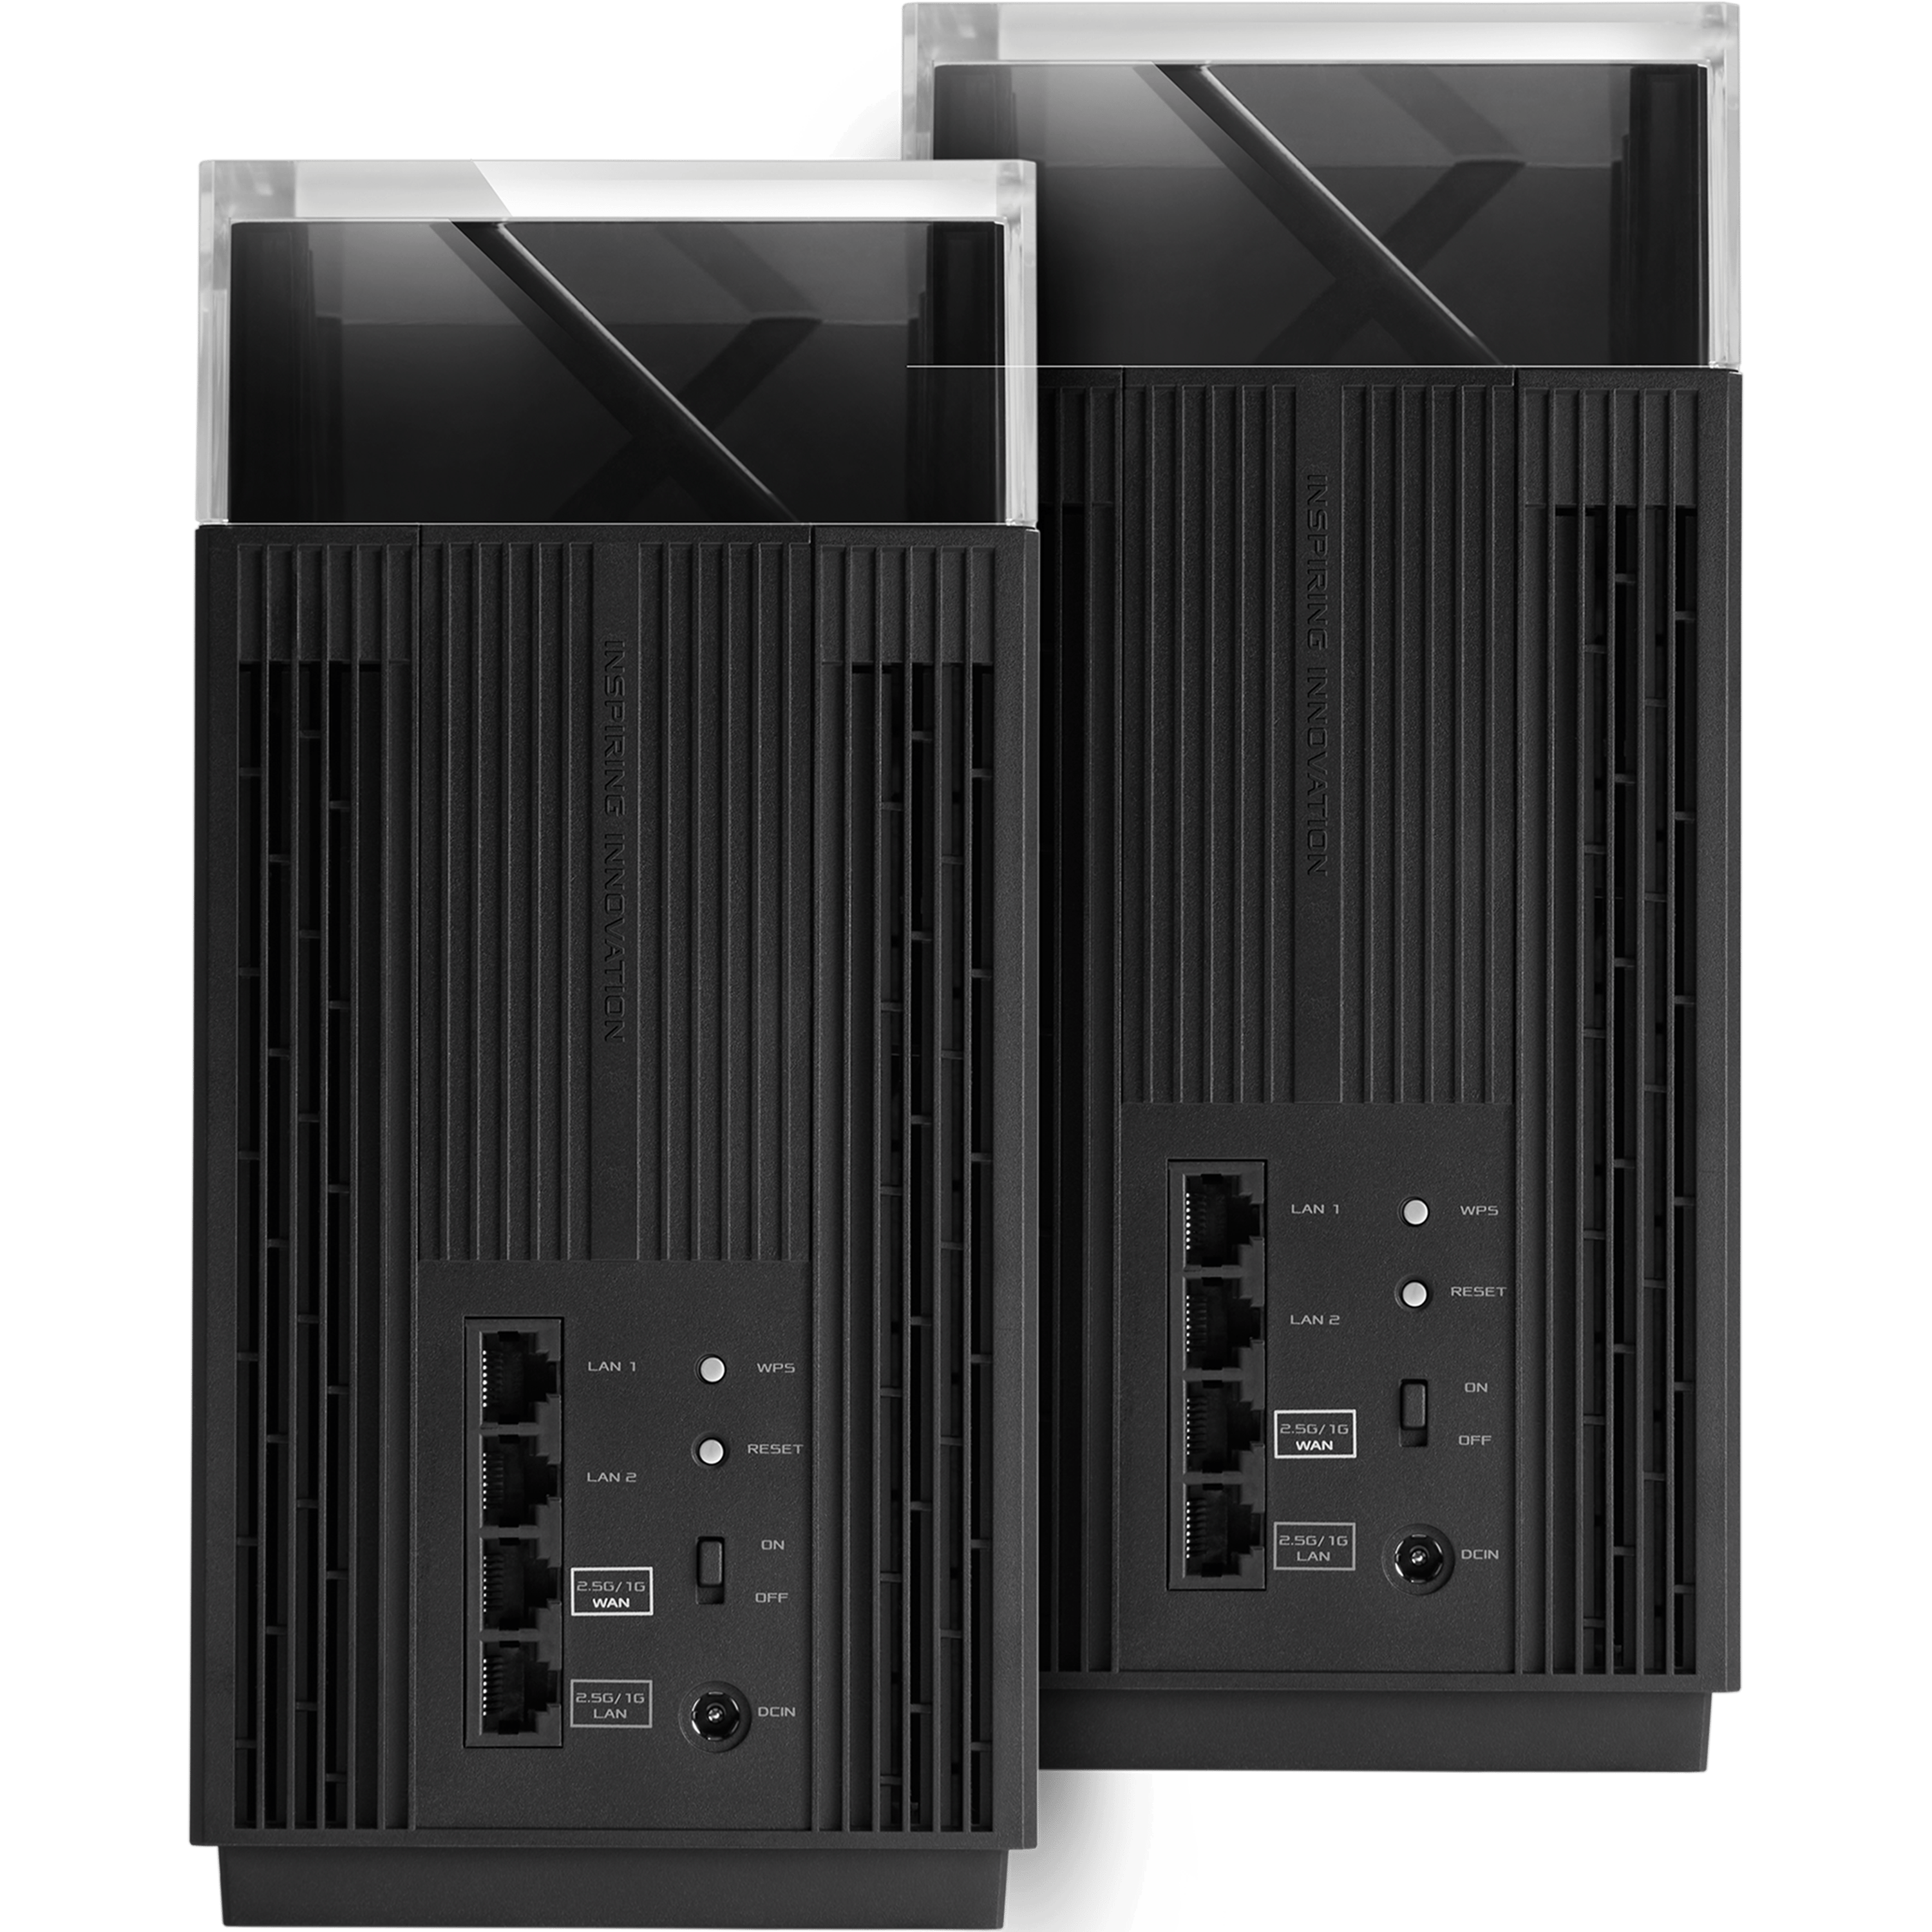 ראוטר אלחוטי Asus ZenWiFi Pro XT12 AX11000 WiFi 6 שתי יחידות - צבע שחור שלוש שנות אחריות ע